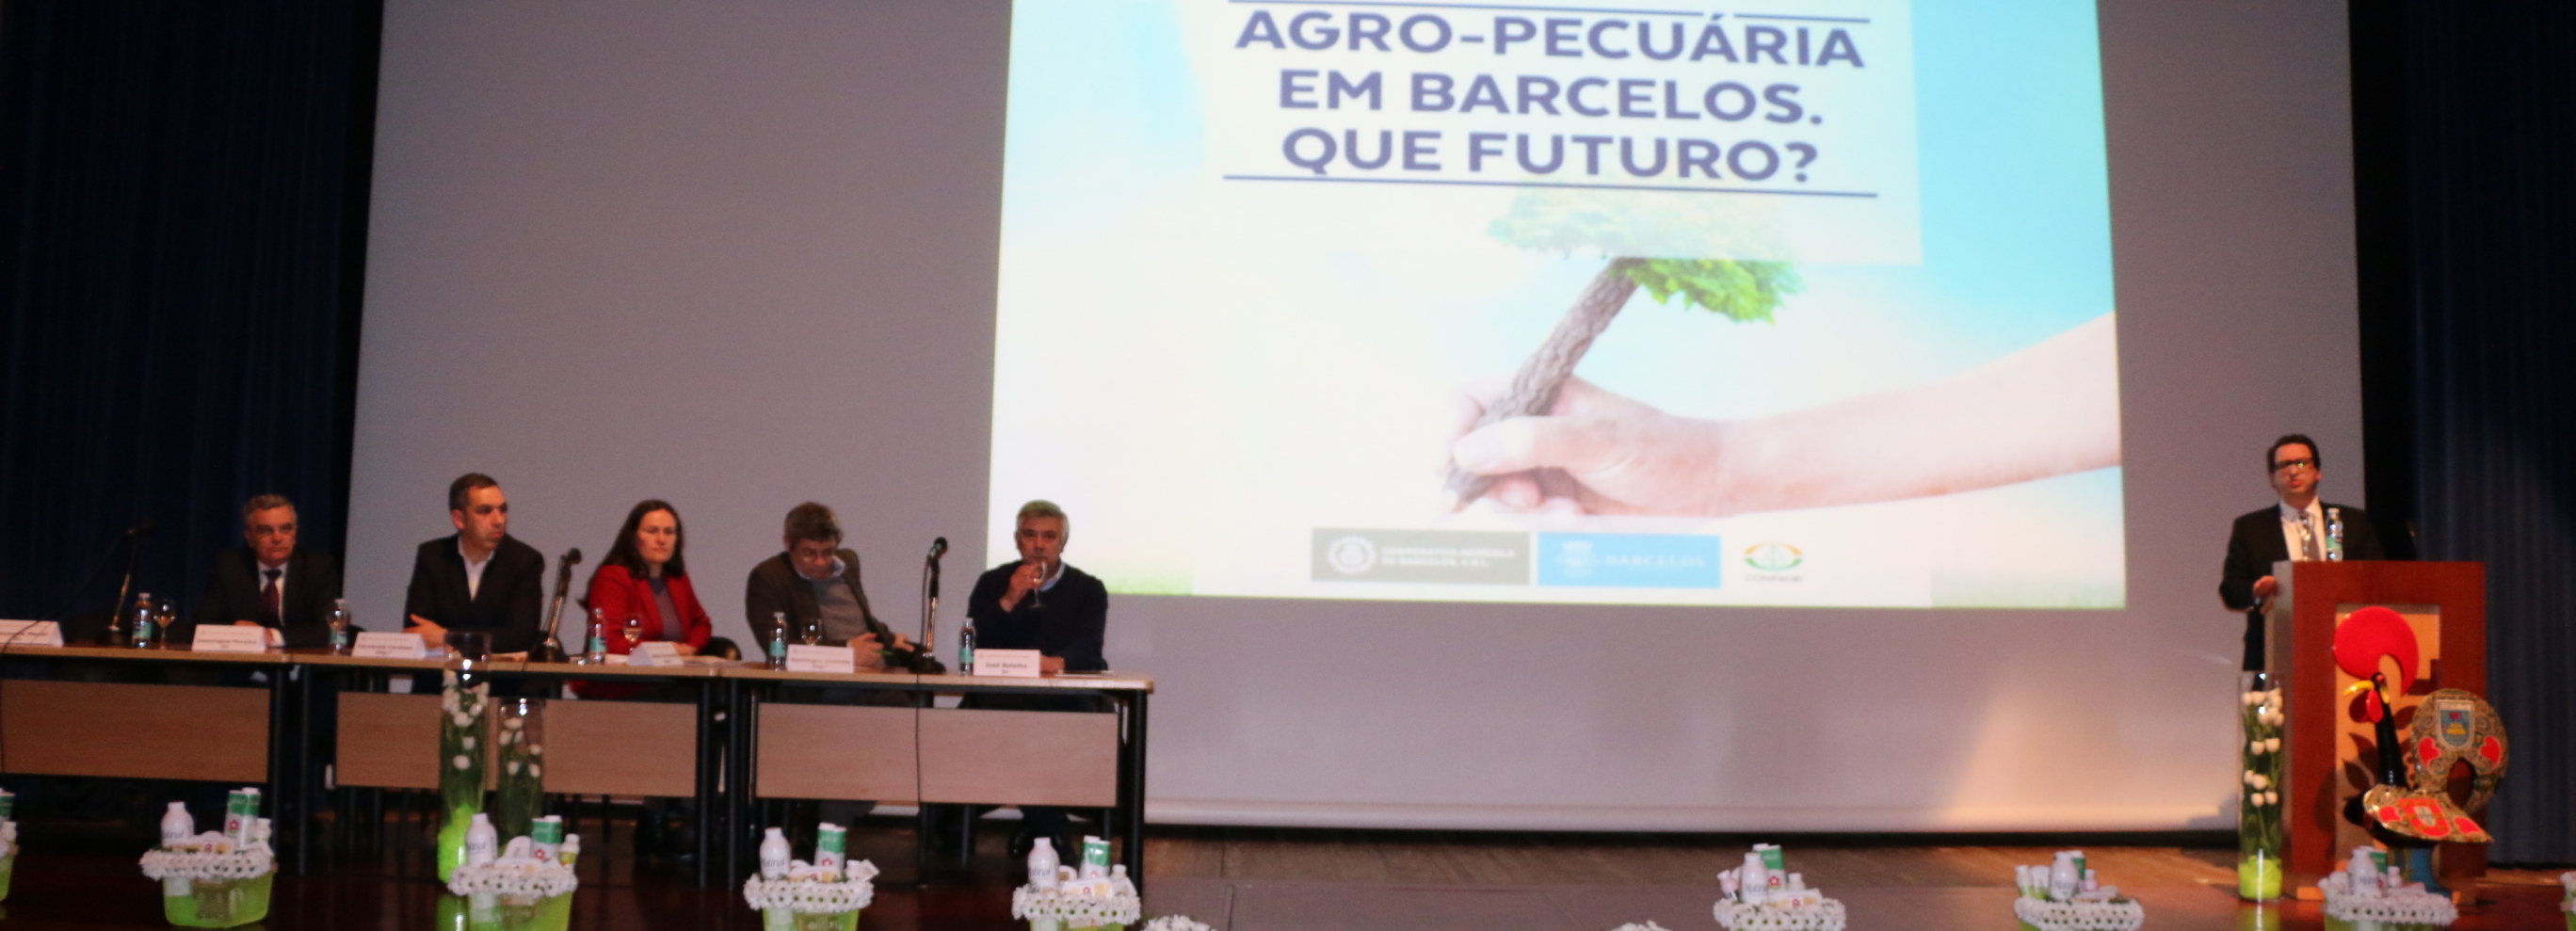 Medida da Câmara Municipal de Barcelos - isenção de taxas para legalização de explorações agrícolas - elogiada pela Cooperativa Agrícola